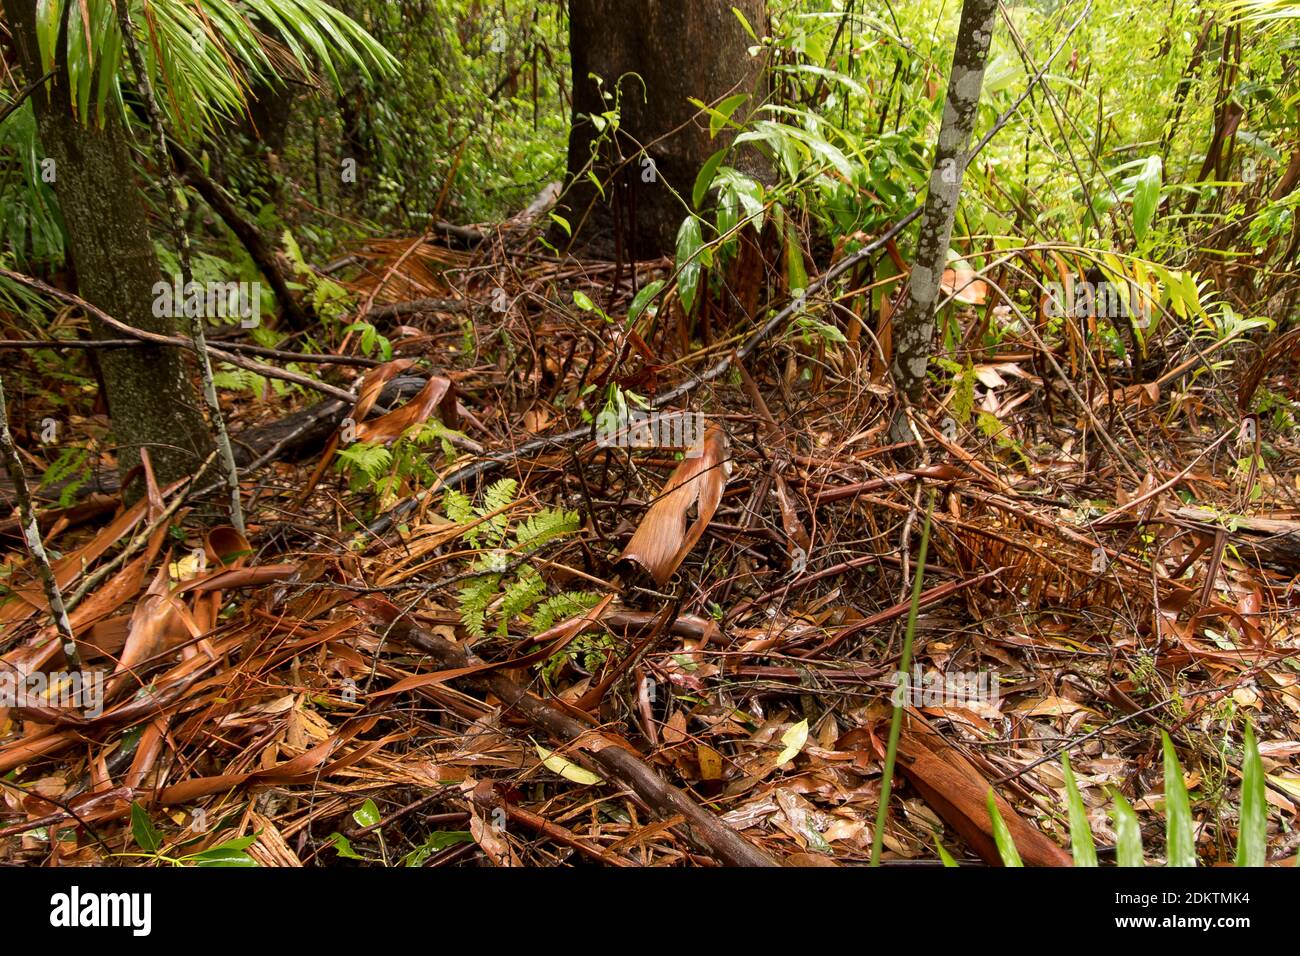 Selva tropical subtropical de tierras bajas. Planta baja y suelo forestal después de una fuerte lluvia de verano. Tamborine Mountain, Queensland, Australia. Foto de stock